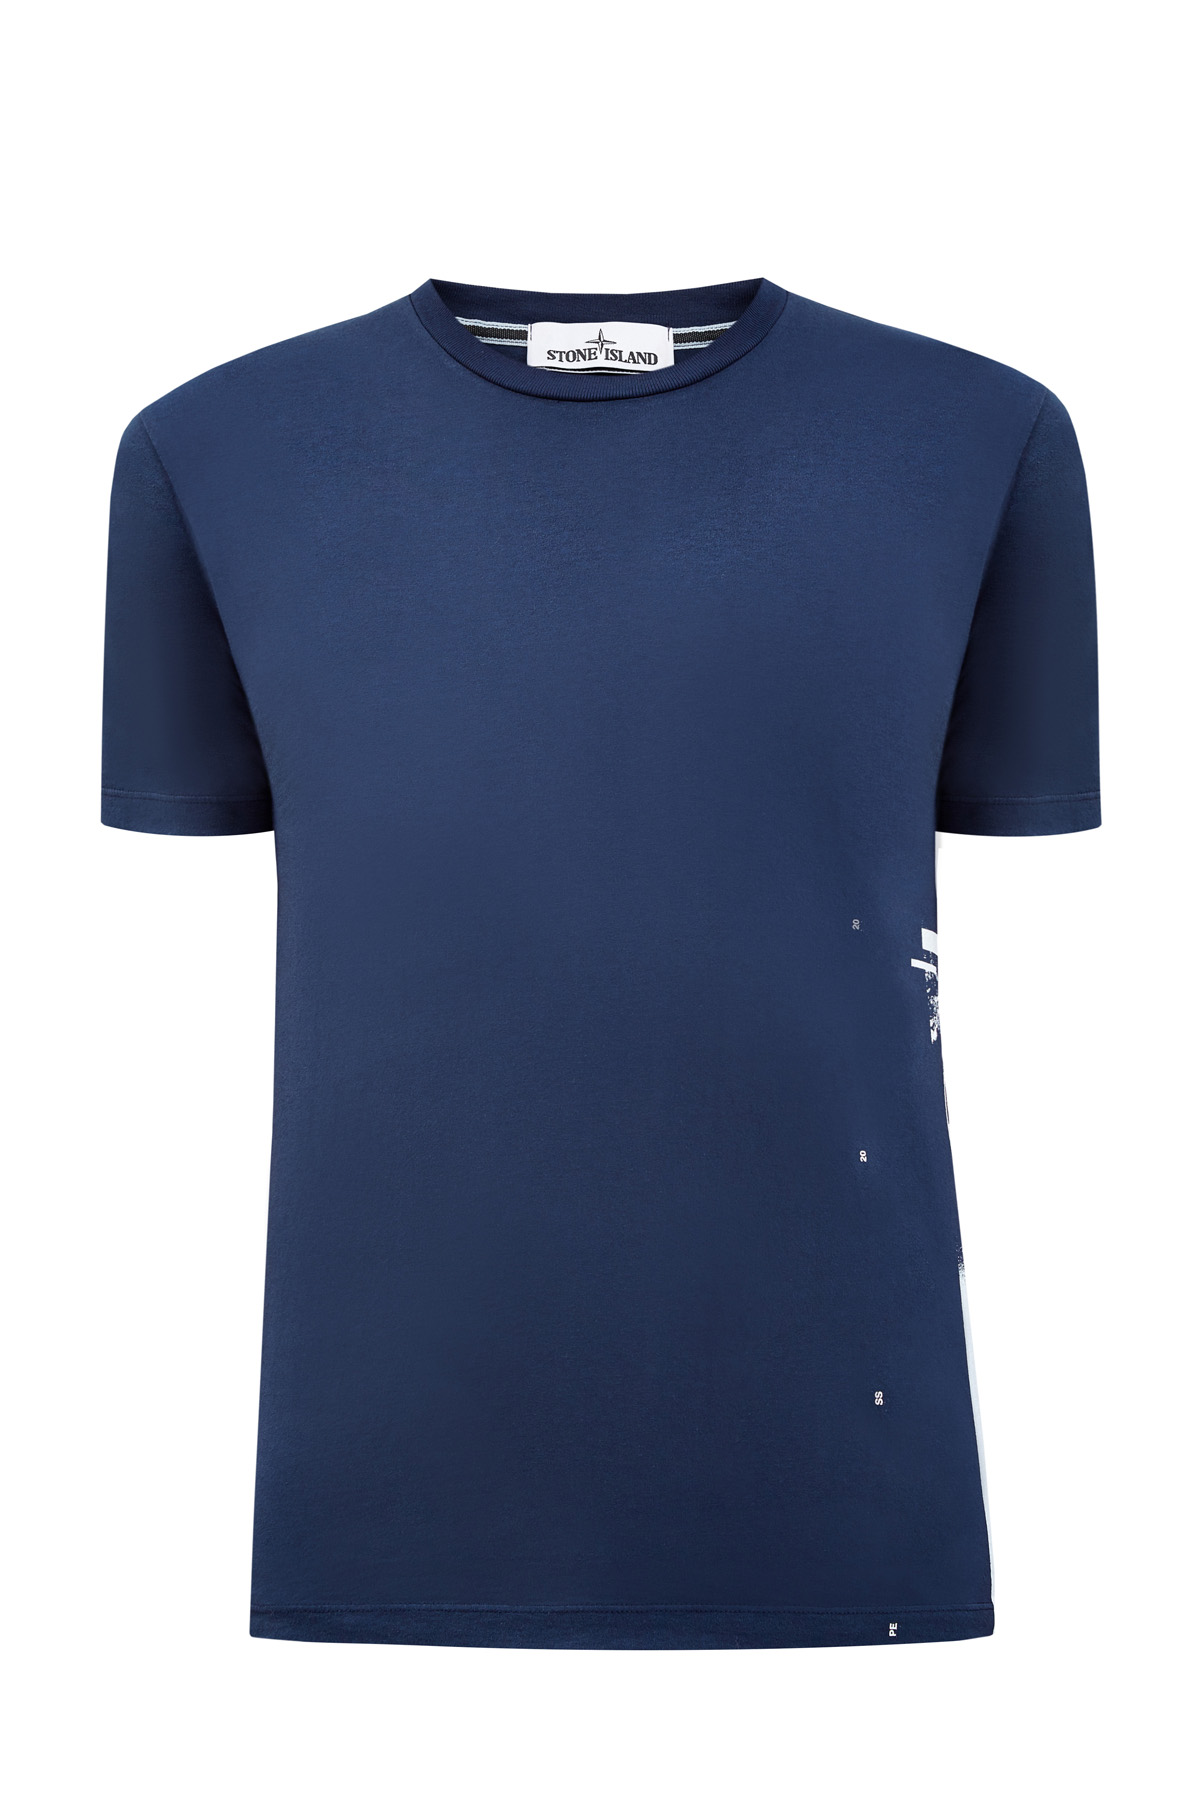 Хлопковая футболка из гладкого джерси с контрастным принтом STONE ISLAND, цвет синий, размер S - фото 1